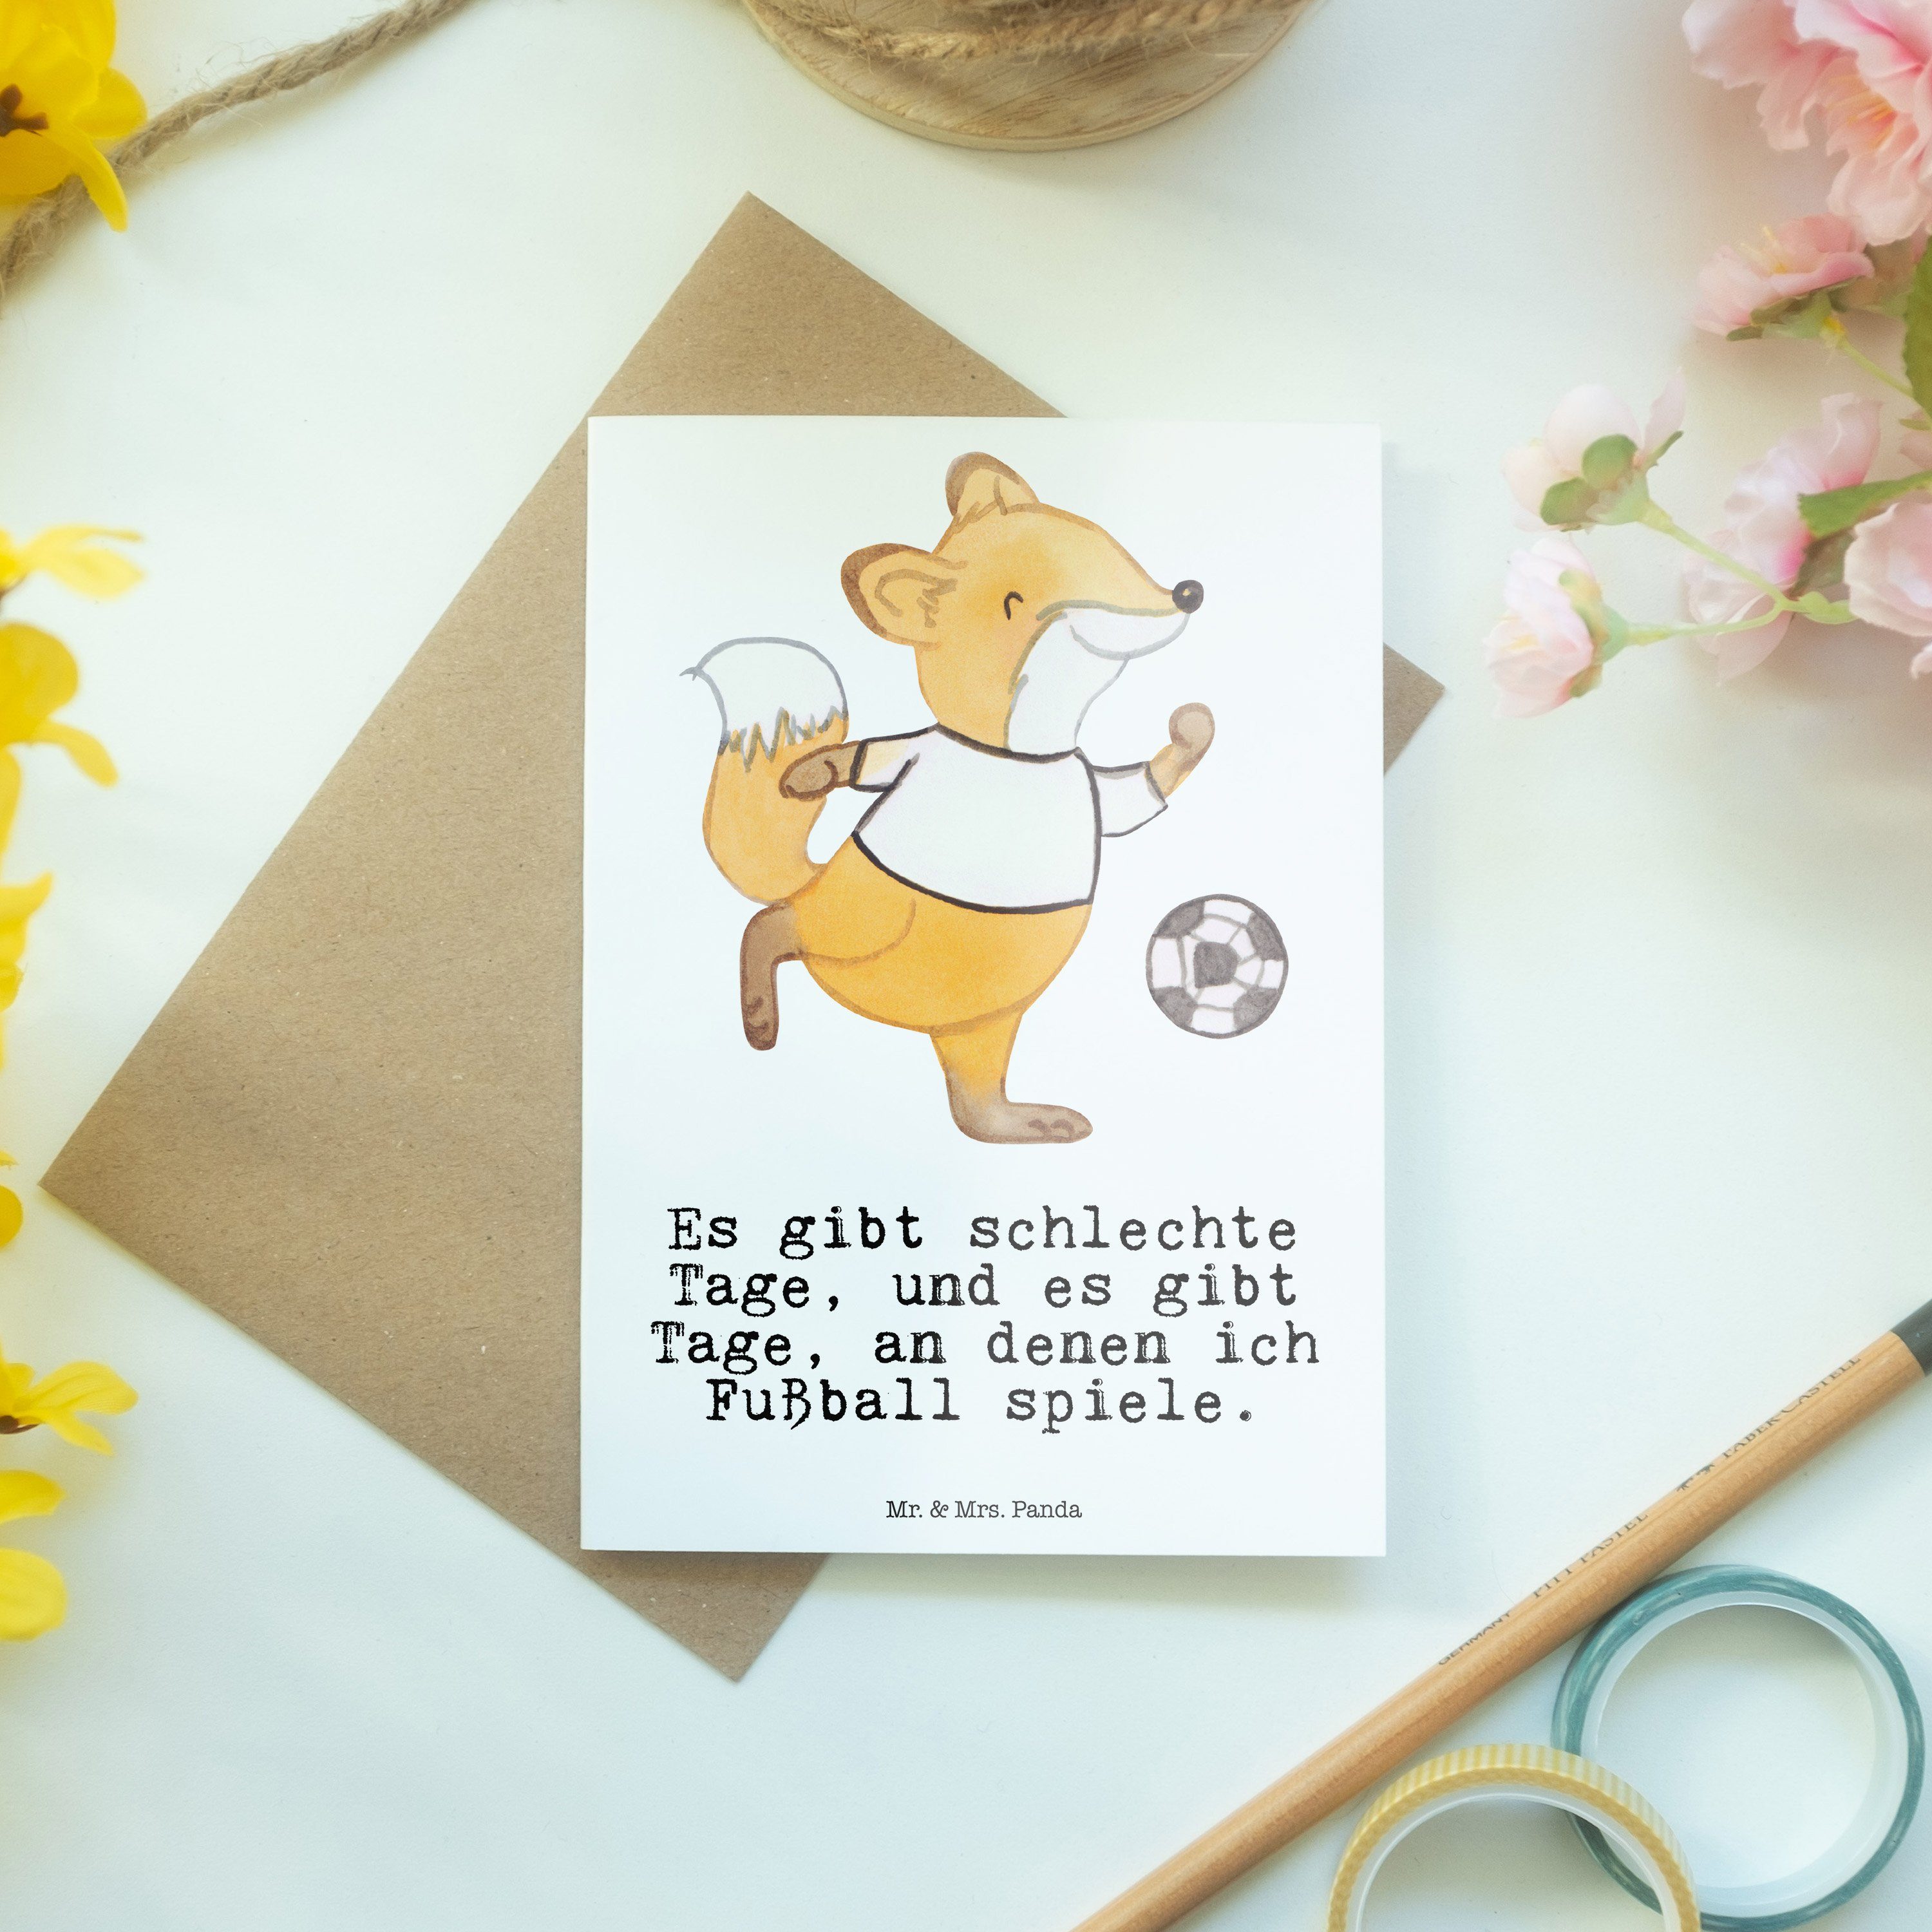 Mr. & Weiß Glückwunschkarte Karte, Panda - - spielen Grußkarte Fußball Fuchs Geschenk, Tage Mrs